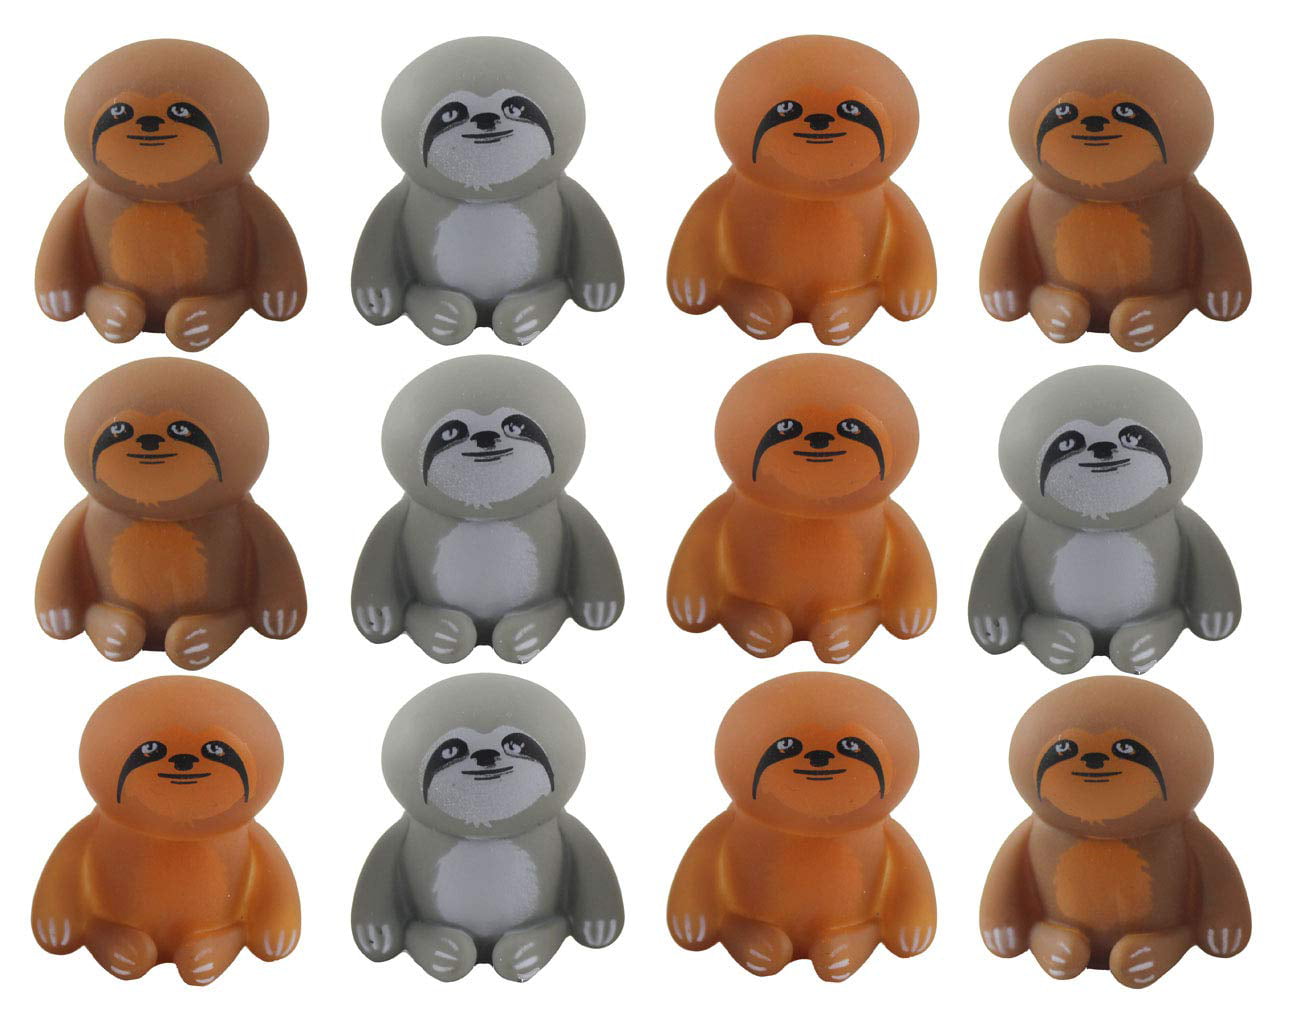 sloth animal figurines